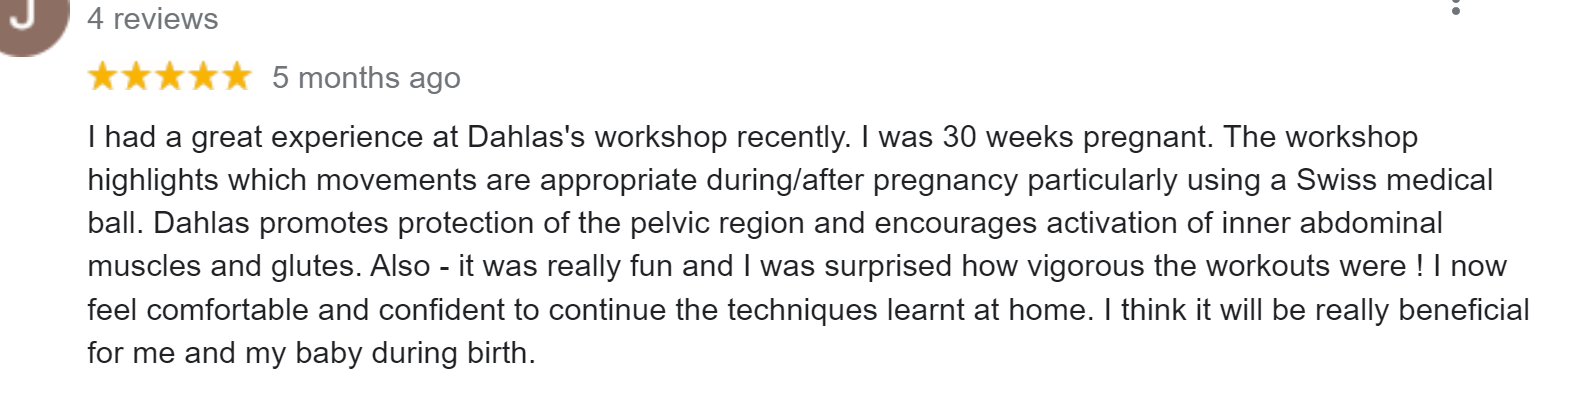 josie-fitball-pregnancy-workshop